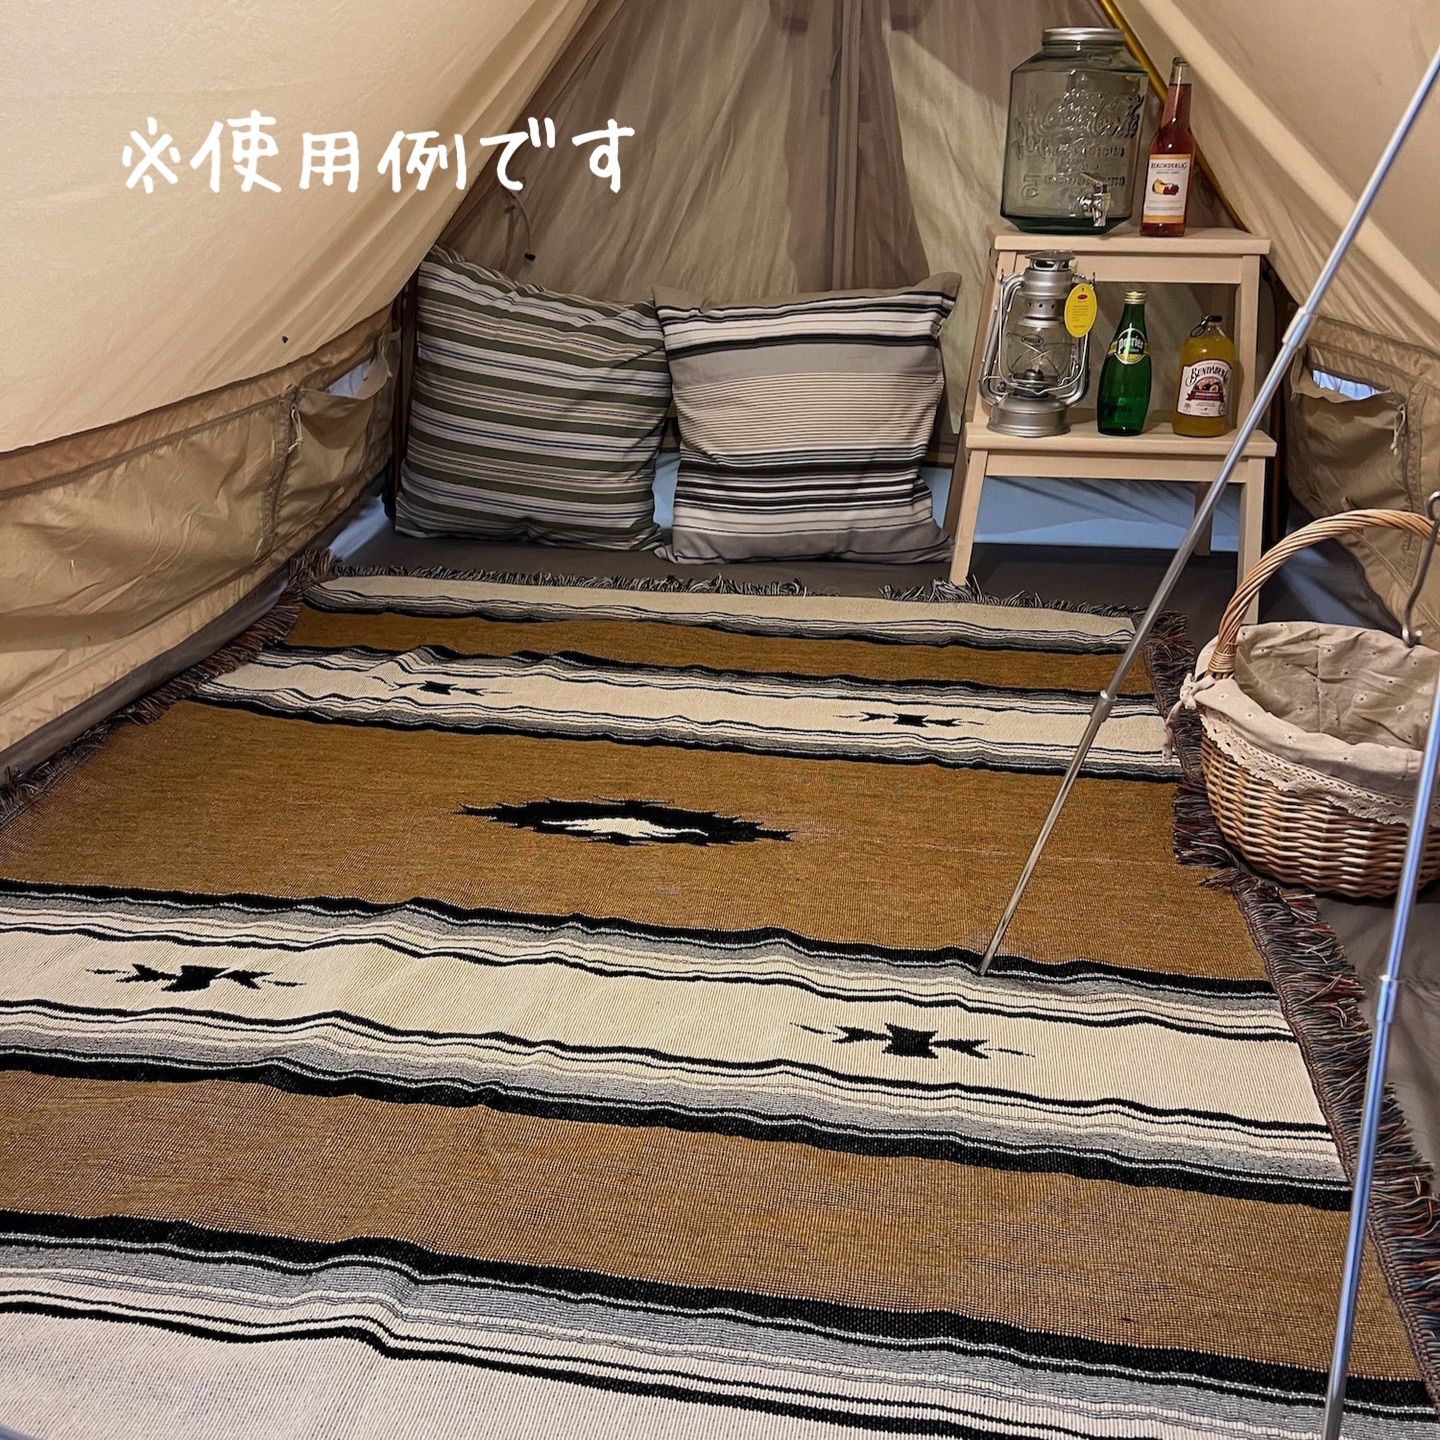 激安☆超特価 グランピング ブランケット キリム オルテガ ラグマット キャンプ 茶色 サーフ